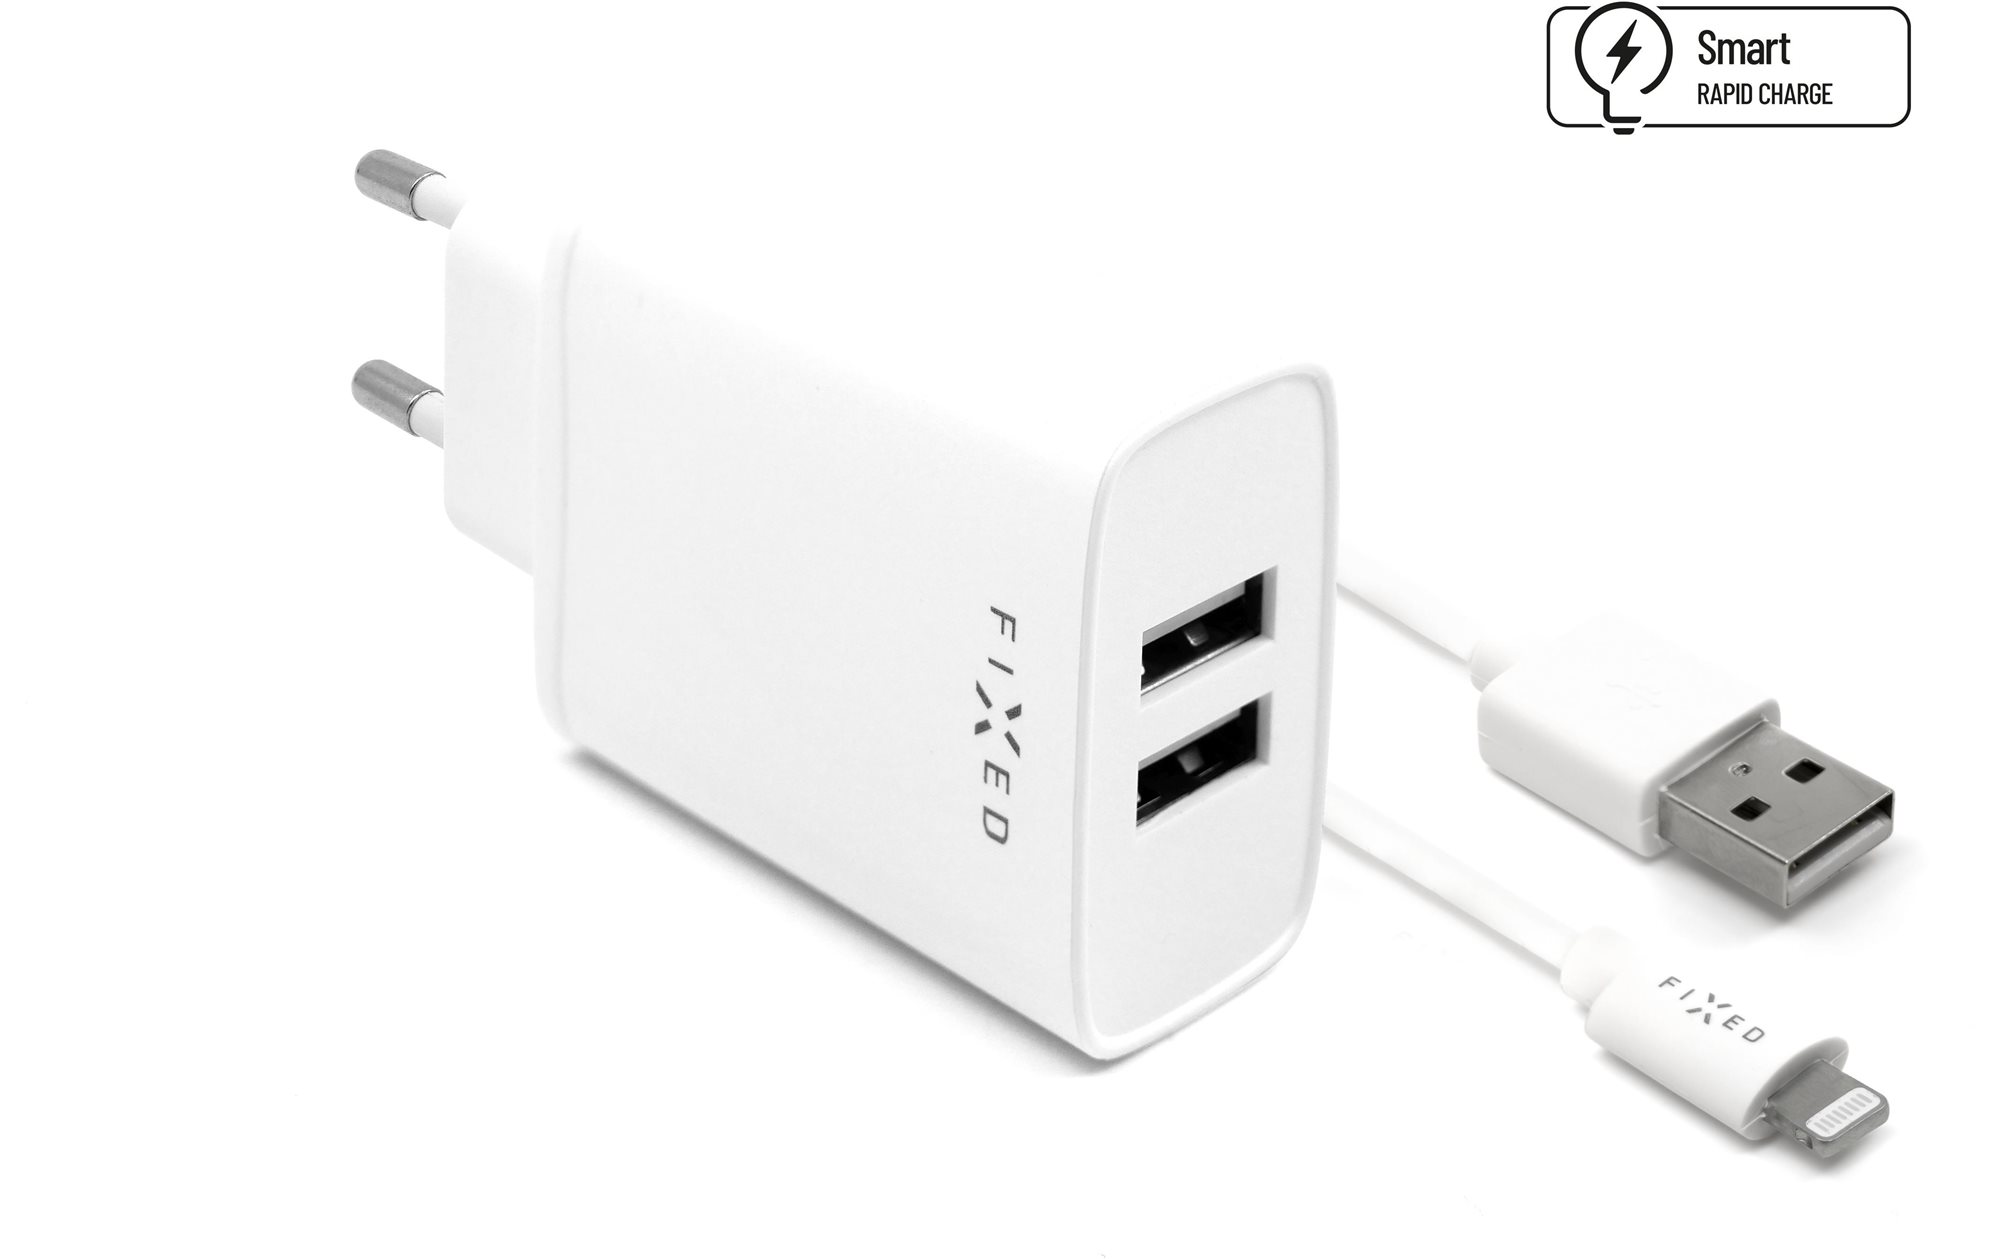 Hálózati adapter FIXED Smart Rapid Charge 15 W 2 x USB kimenettel és USB/Lightning kábellel 1m MFI tanúsítvány fehér